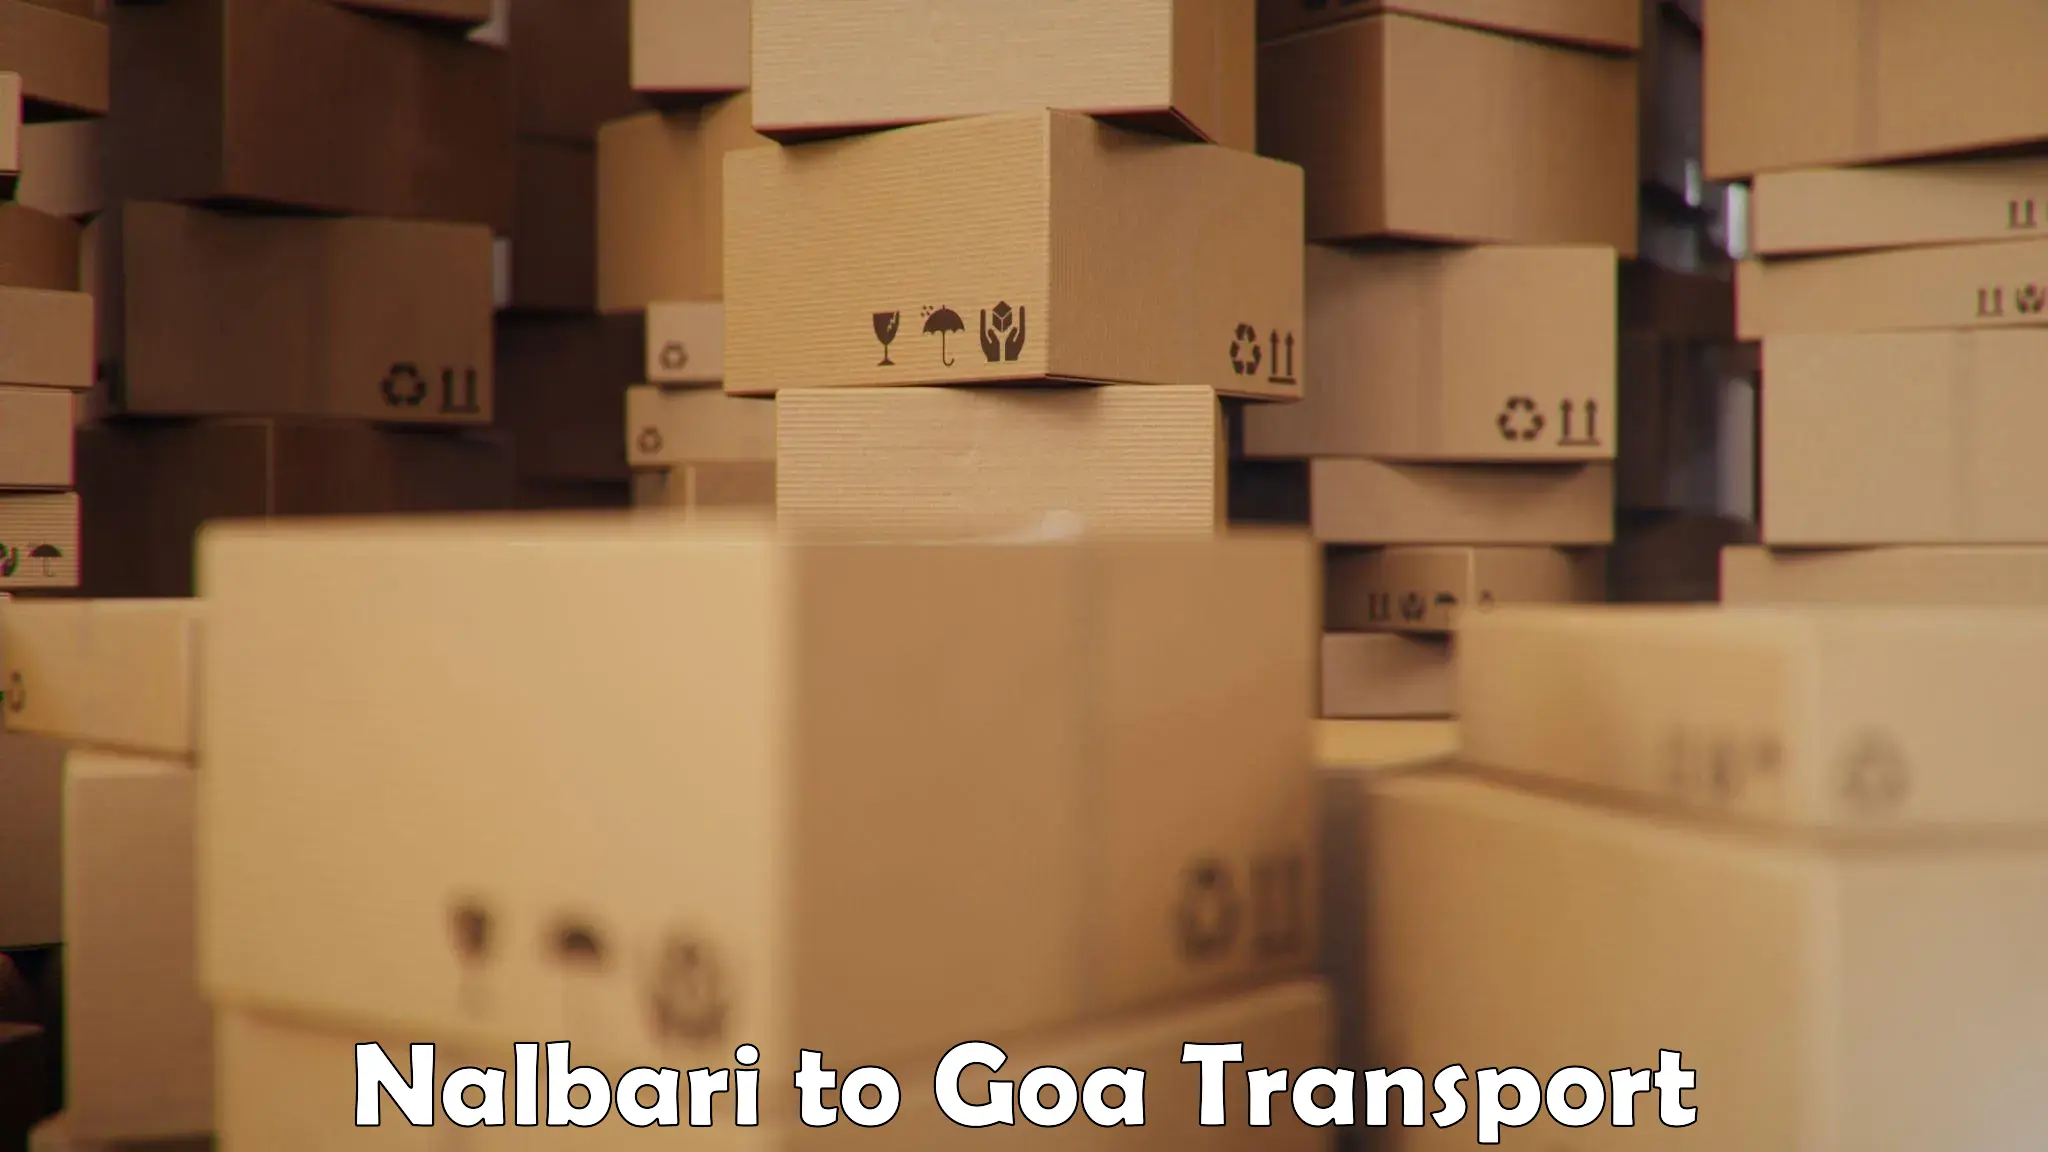 Air freight transport services Nalbari to Goa